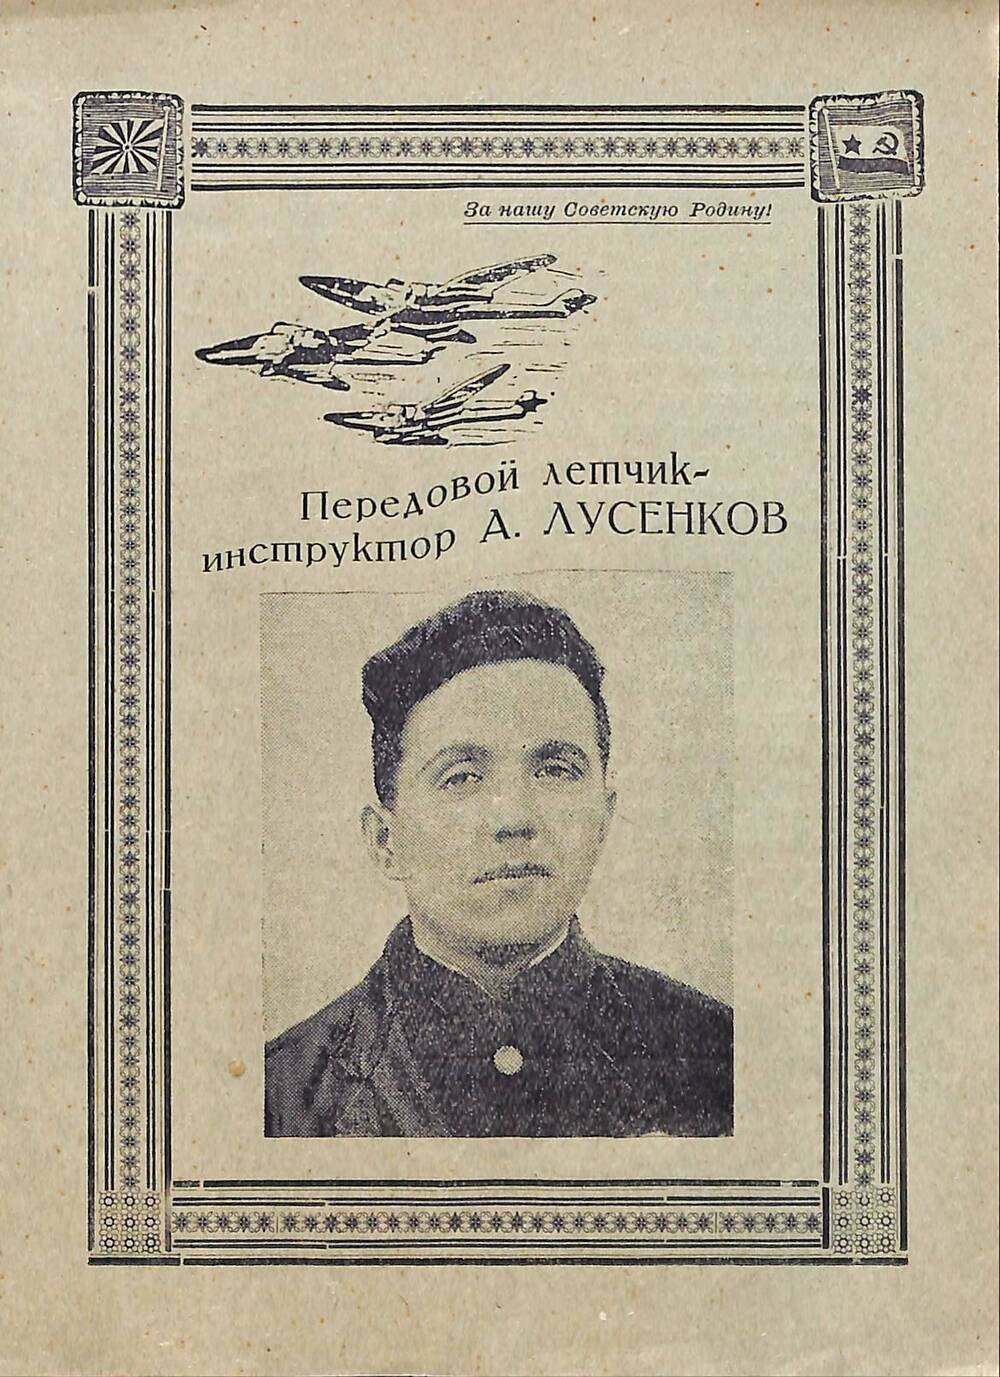 Листовка о летчике-инструкторе А. Лусенкове